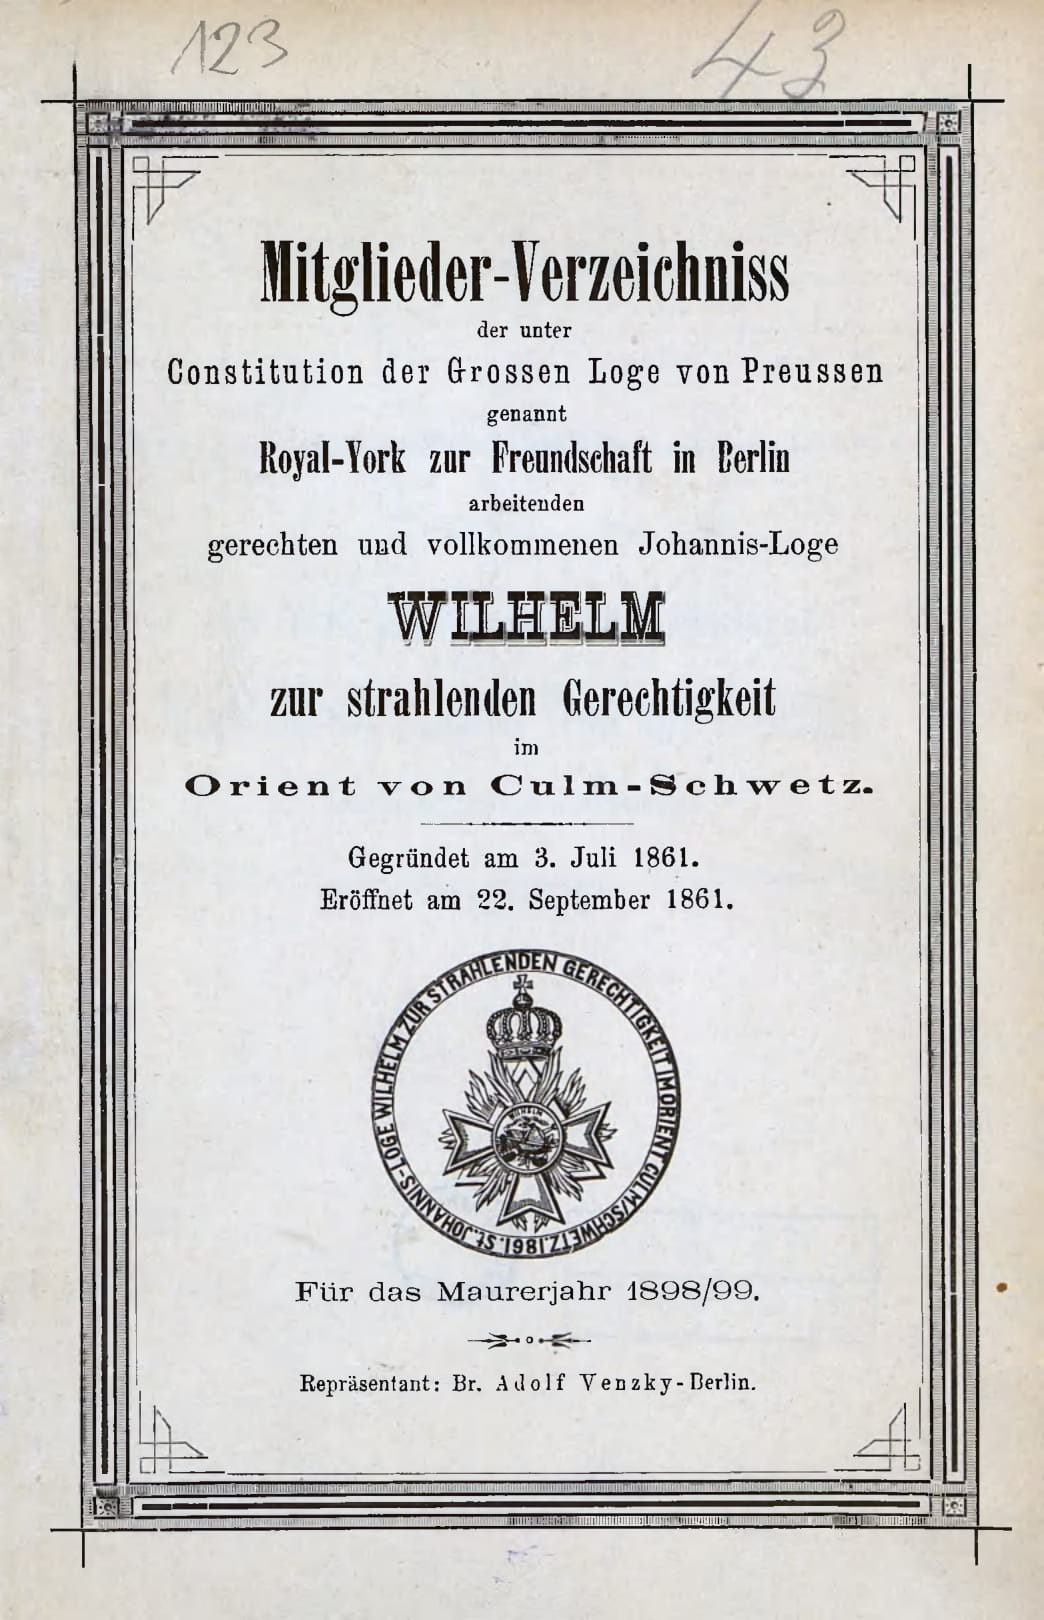 Okładka spisu członków loży 'Chełmno-Świecie' z lat 1898-99 (arch. Karola Platy-Nalborskiego)